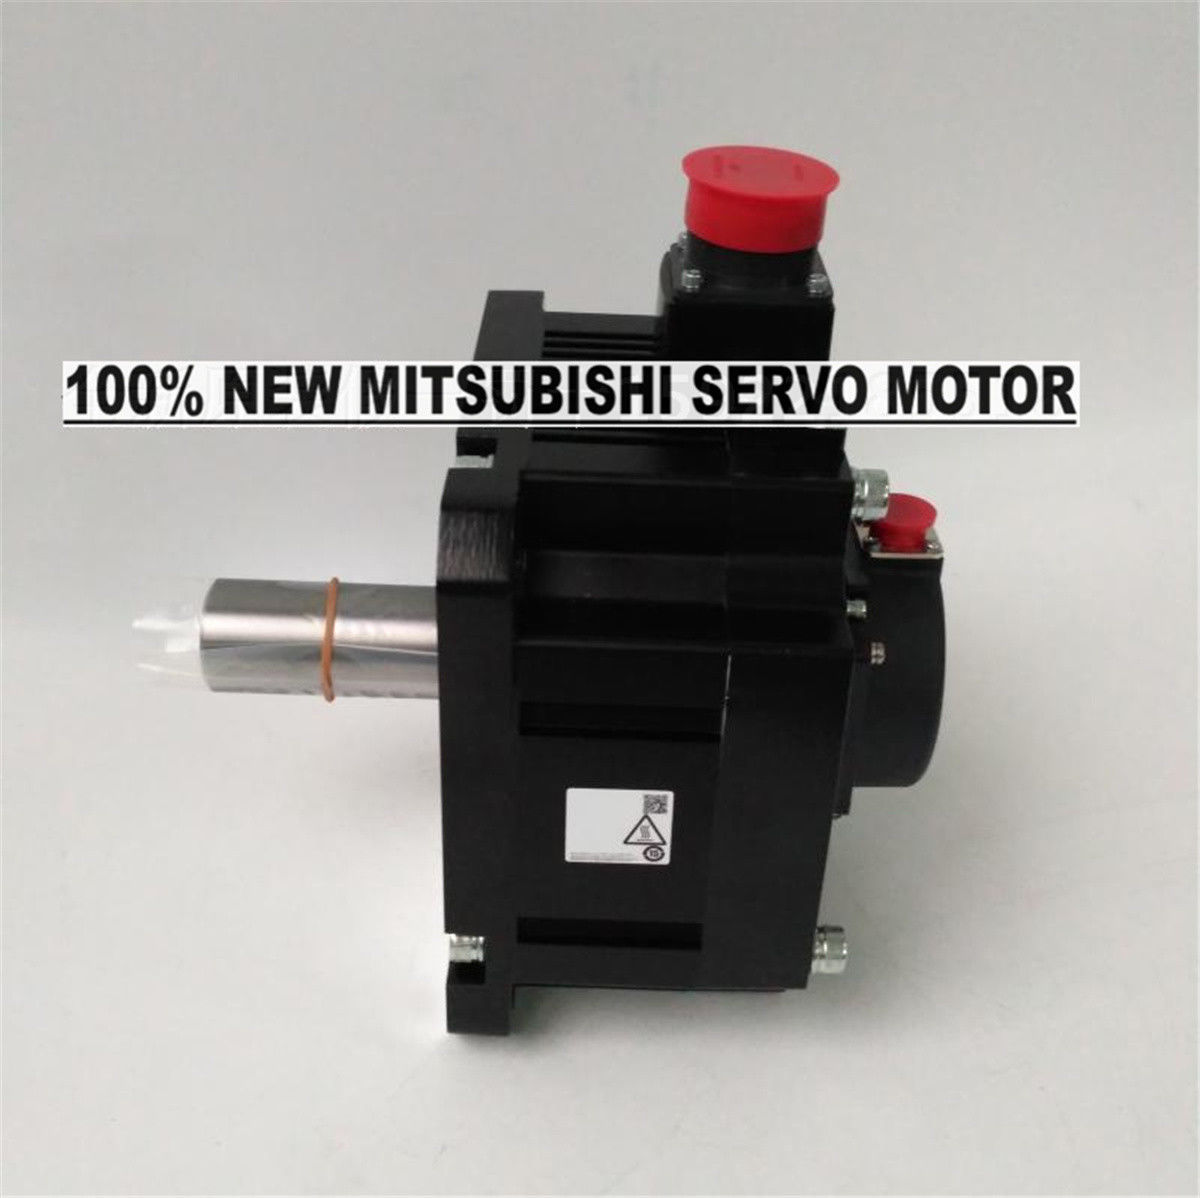 Brand NEW Mitsubishi Servo Motor HG-SN202J-S100 in box HGSN202JS100 - Click Image to Close